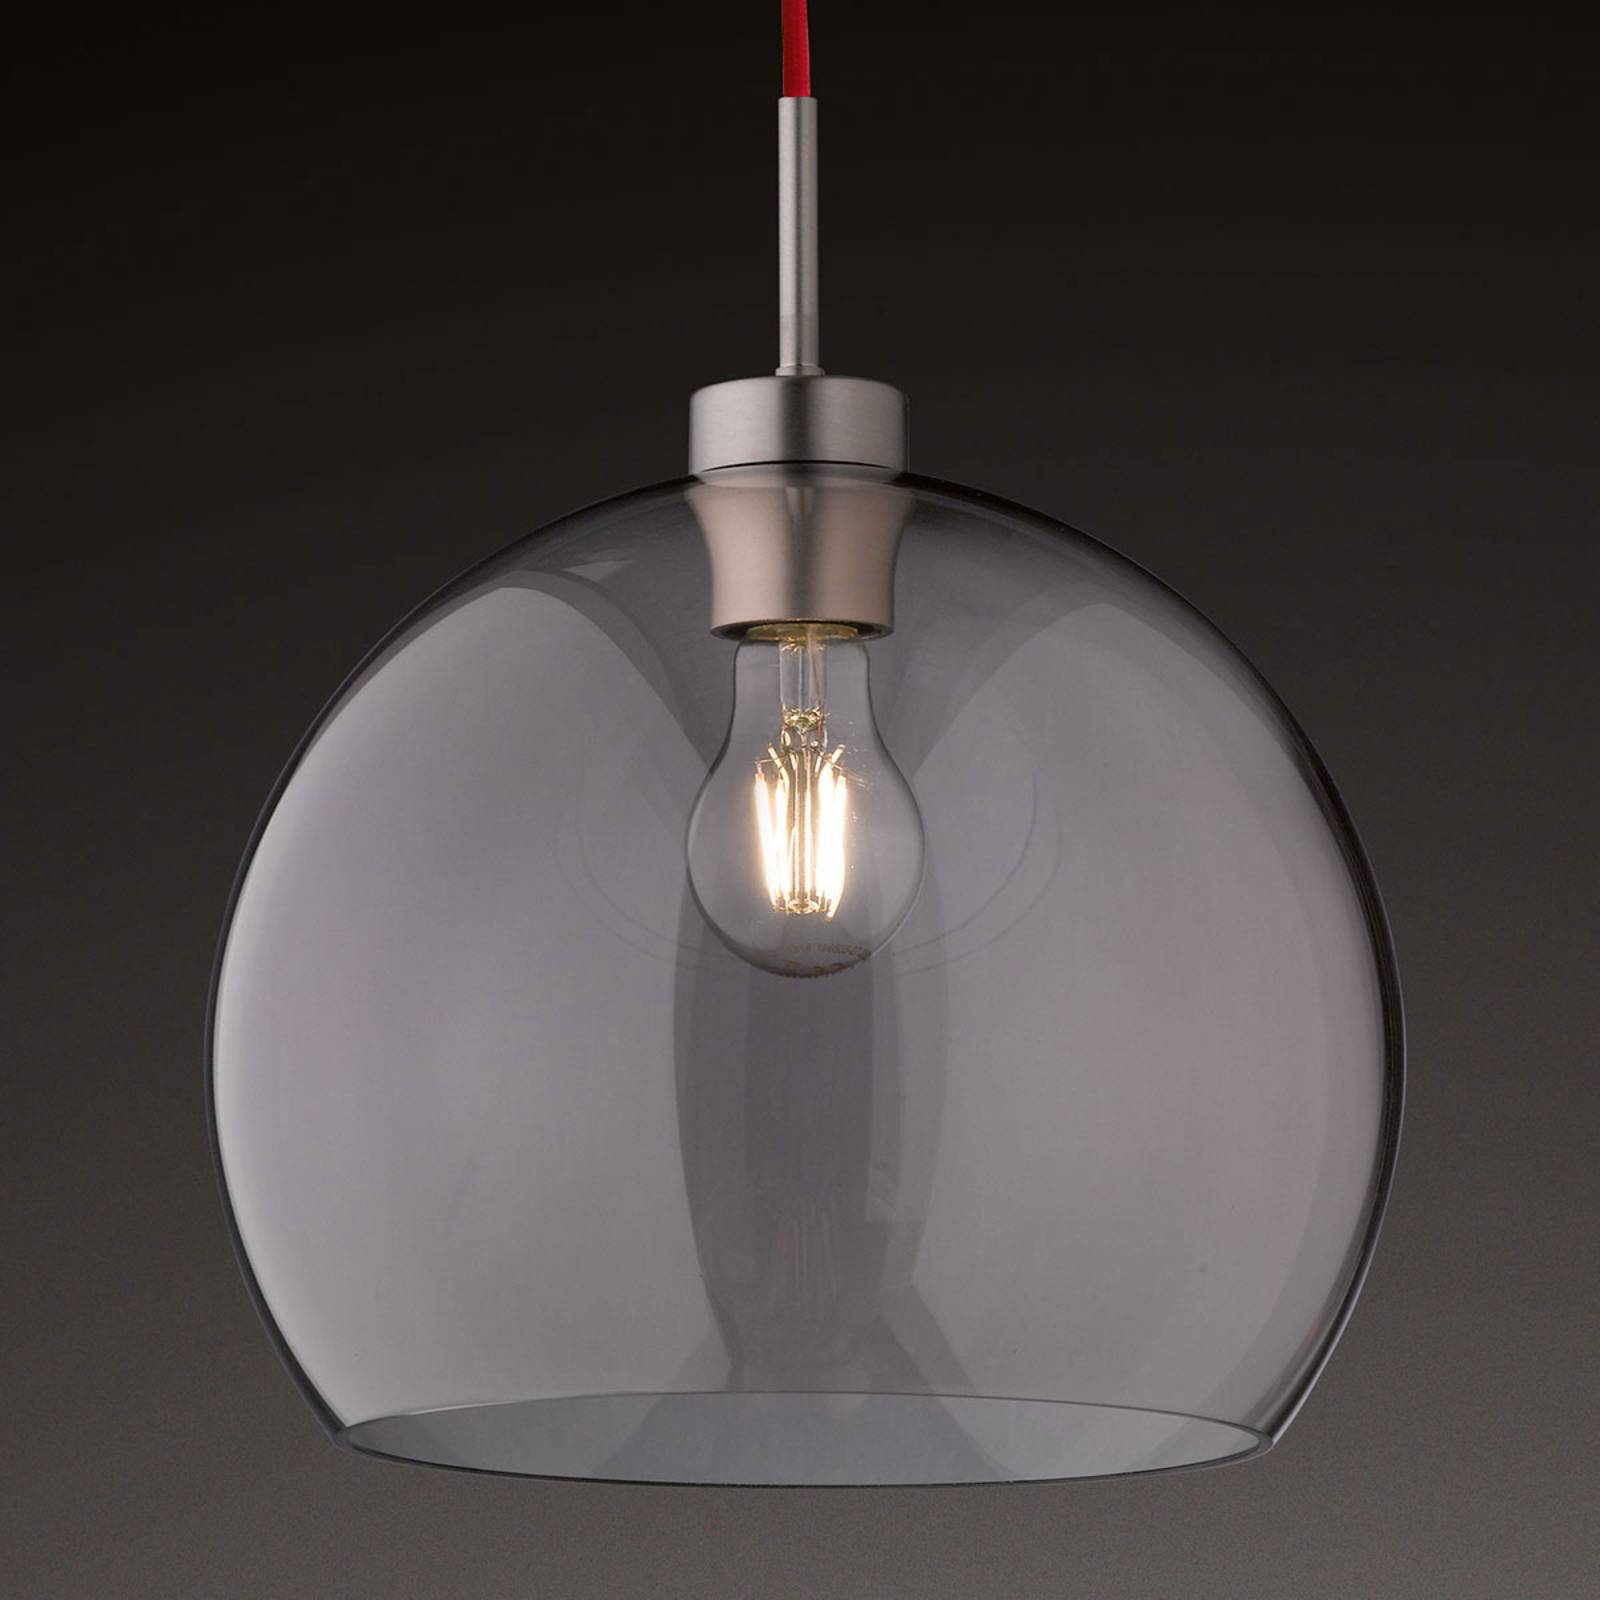 Szklana lampa wisząca Clear, 30 cm